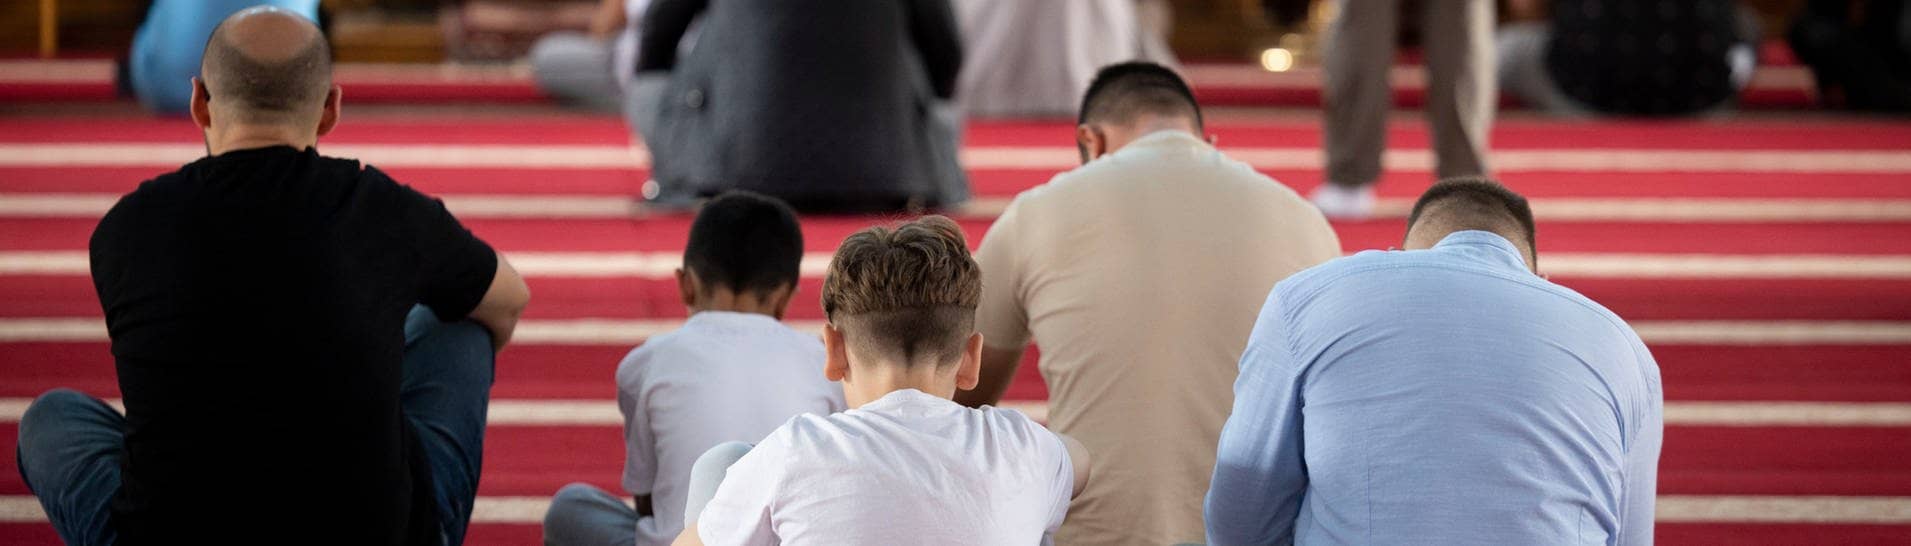 Muslime nehmen am Freitagsgebet in der Merkez DITIB Moschee teil. Nach dem Aufruf der Terrororganisation Hamas zu ihrer weltweiten Unterstützung an diesem Freitag warnt die Türkische Gemeinde davor, dem nachzukommen. (Foto: dpa Bildfunk, picture alliance/dpa | Christoph Reichwein)